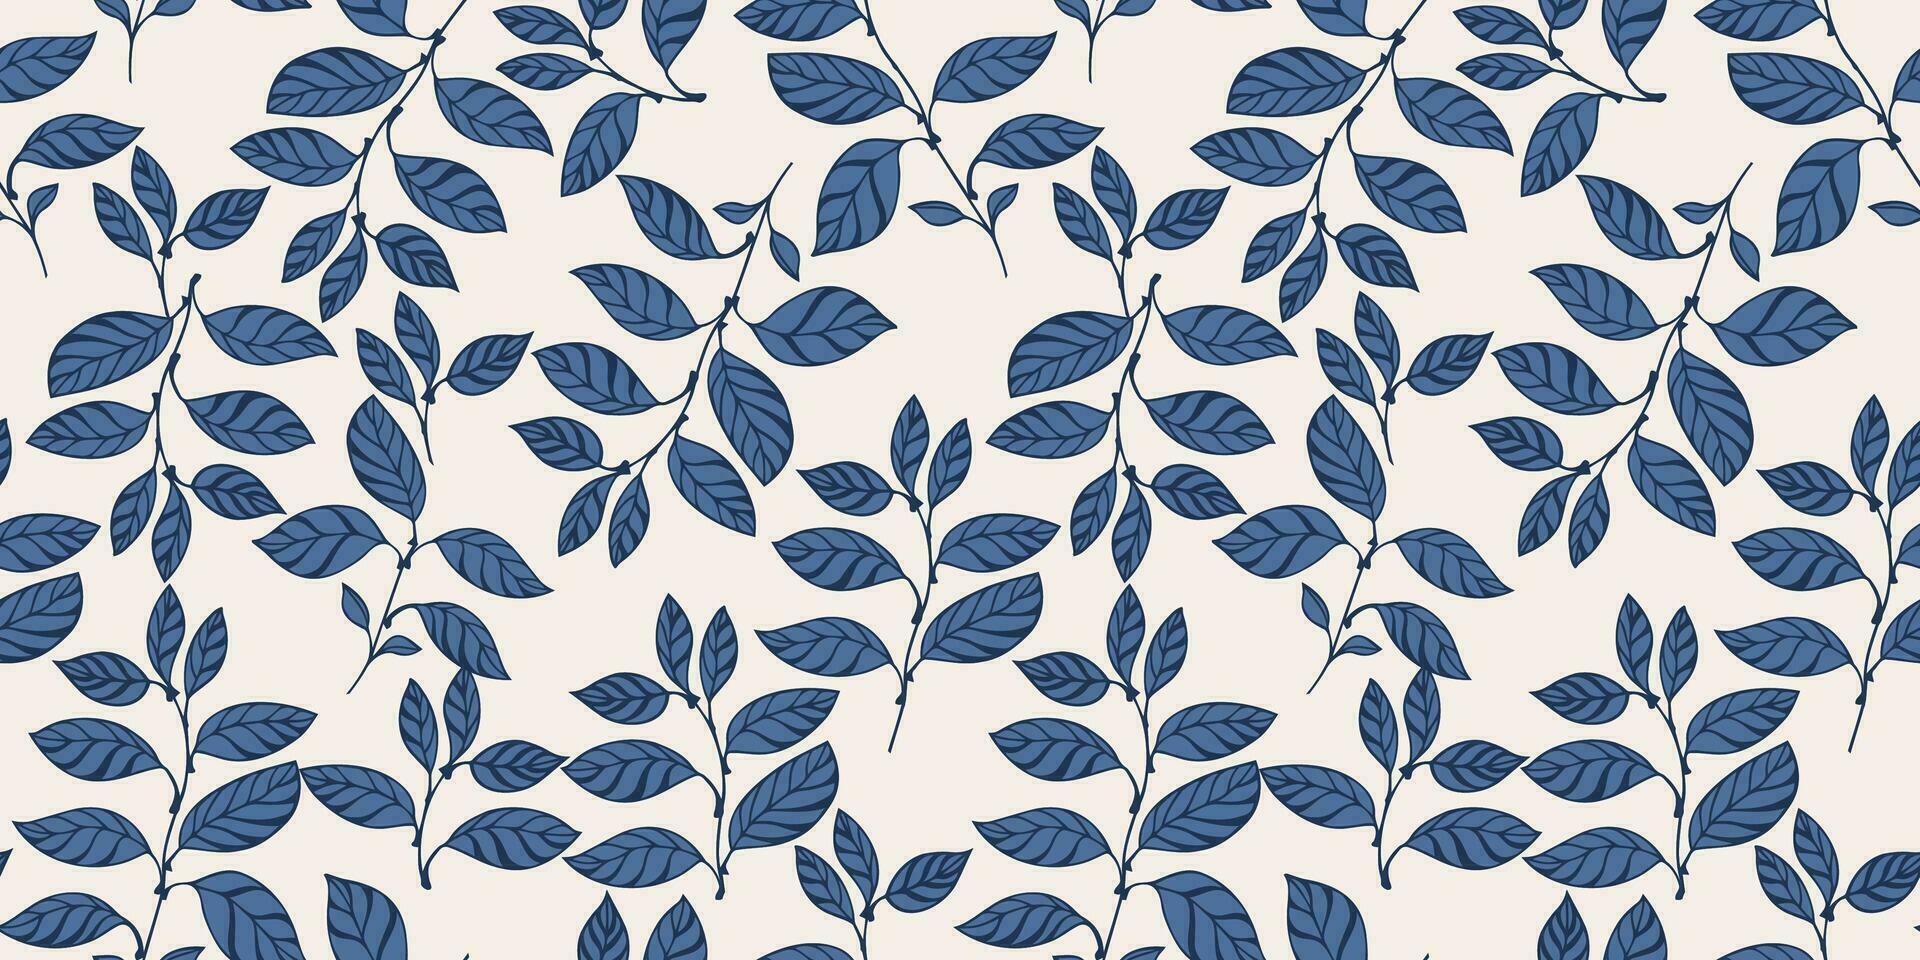 vektor hand dragen kreativ blå blad stjälkar sömlös mönster. konstnärlig sömlös bakgrund med abstrakt, modern, grenar löv. mall för design, textil, mode, tyg, tapet